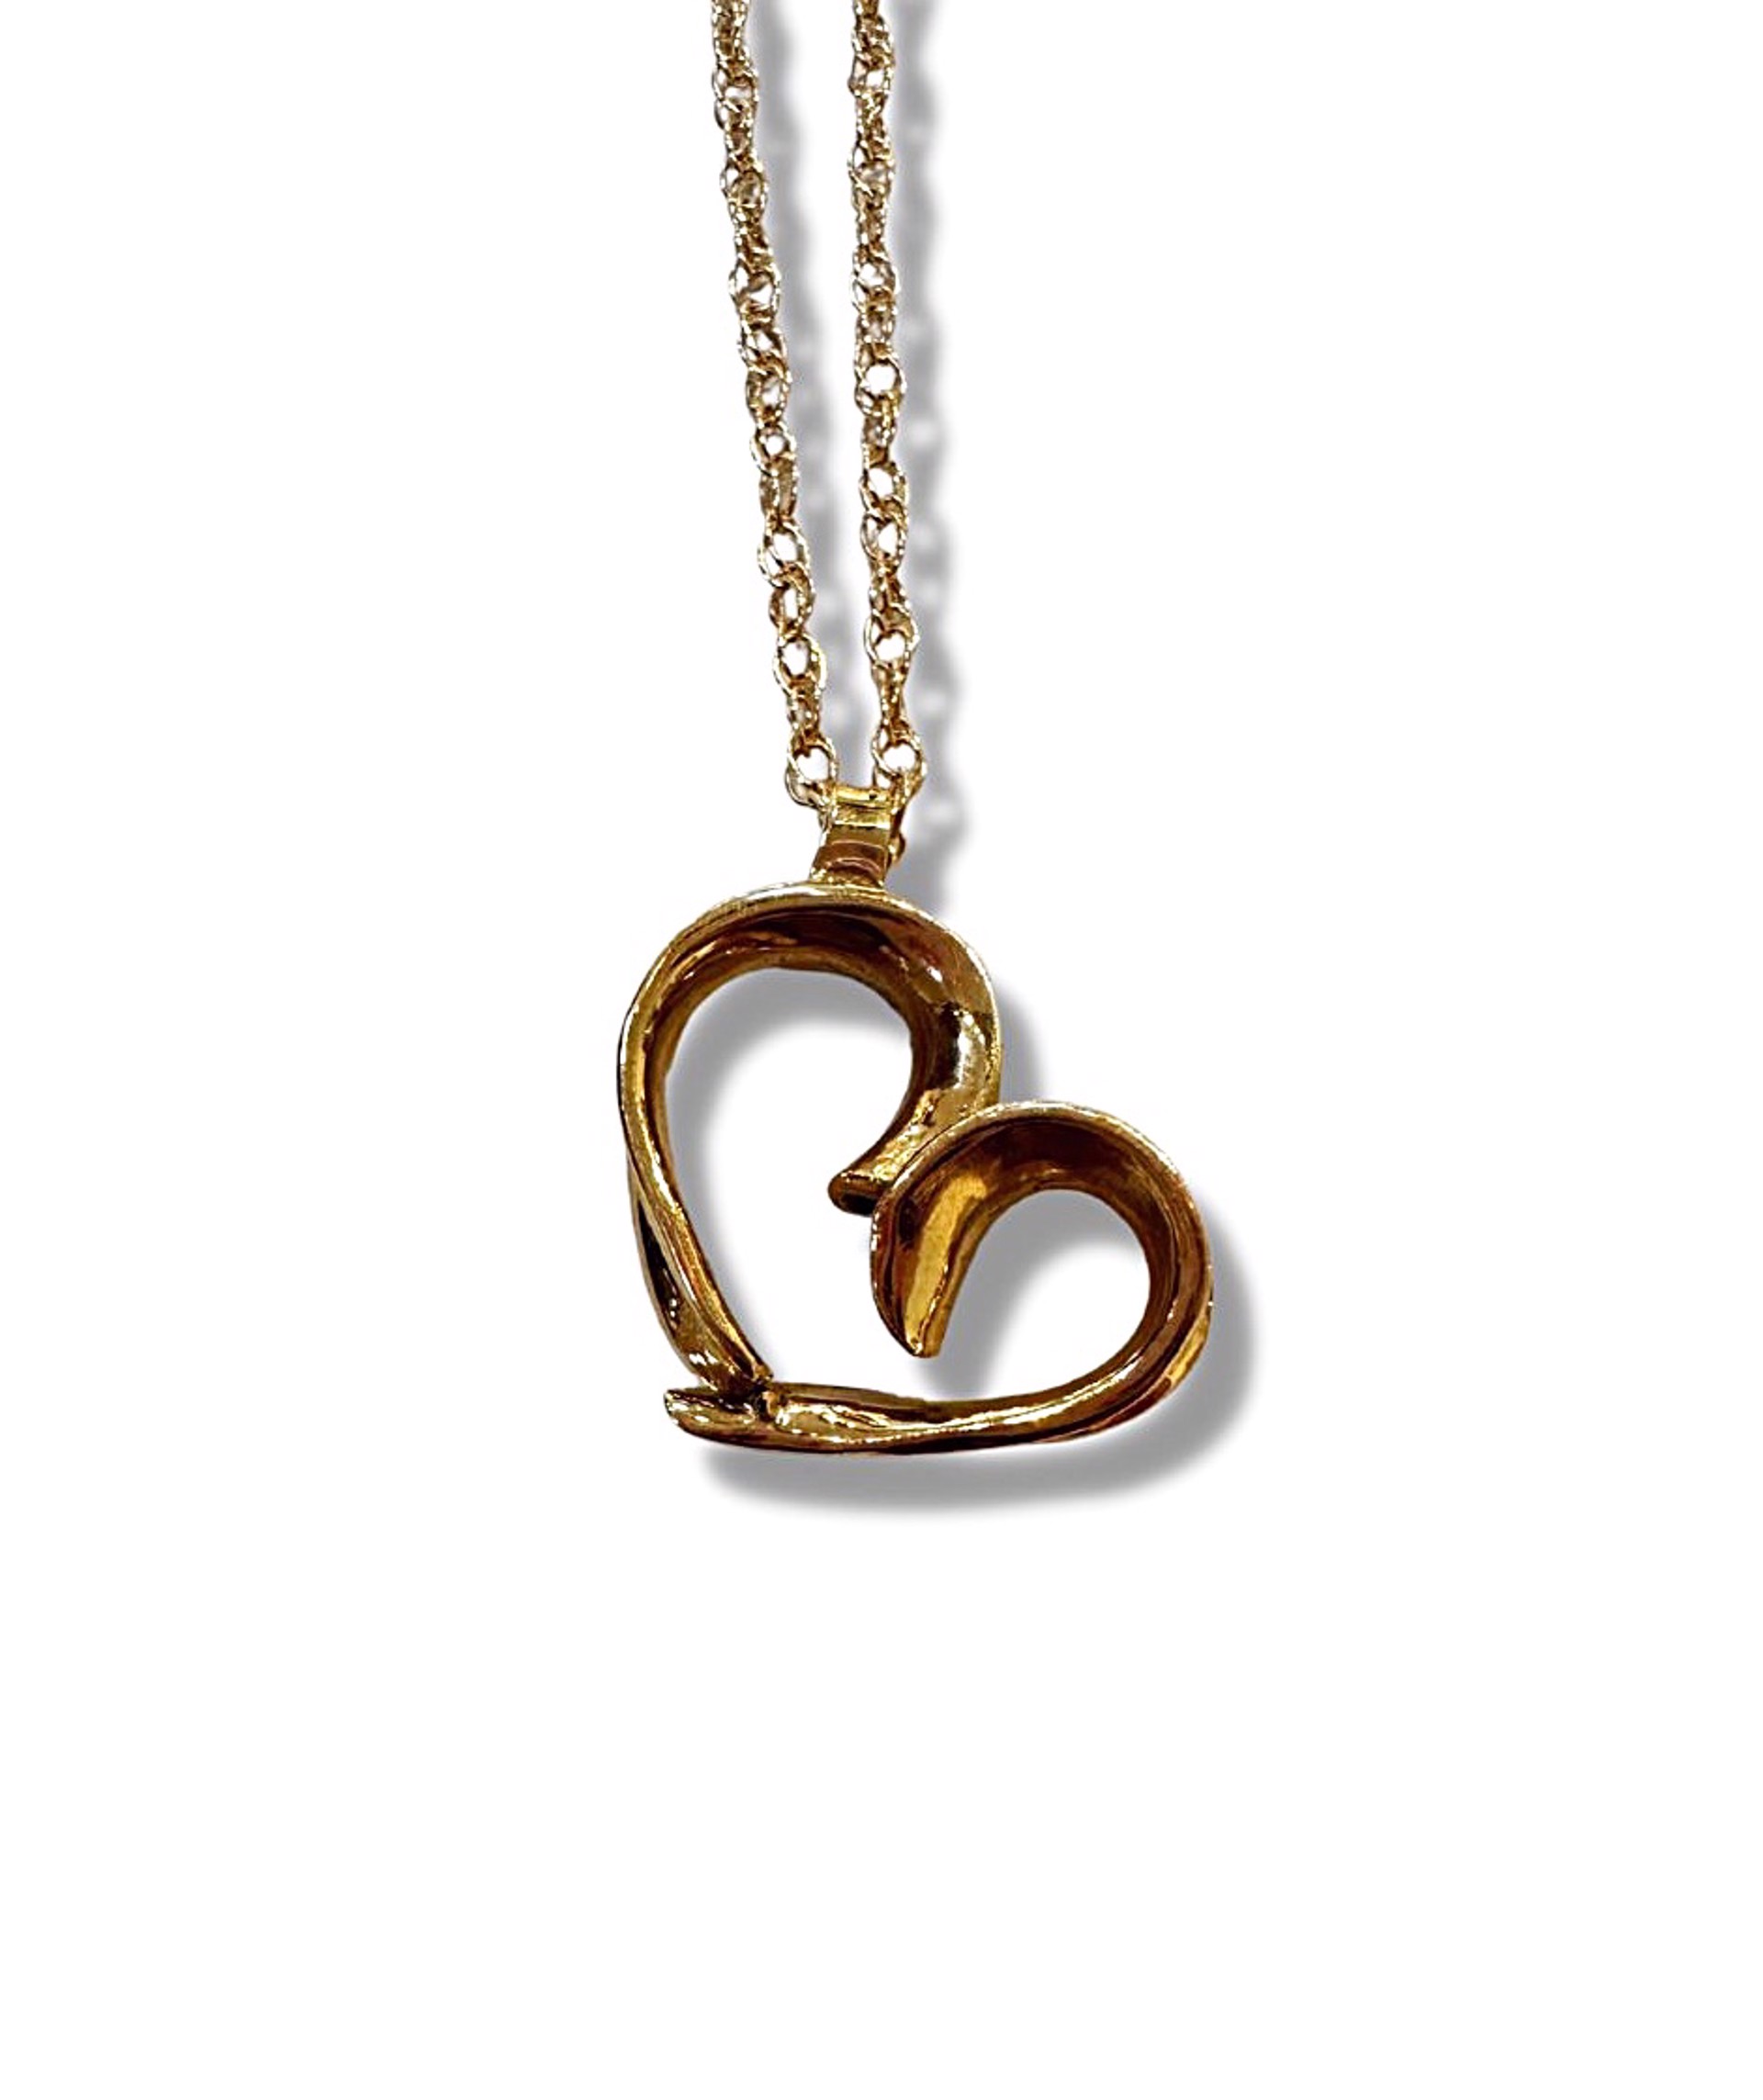 Necklace - 18K Gold Heart by Pattie Parkhurst